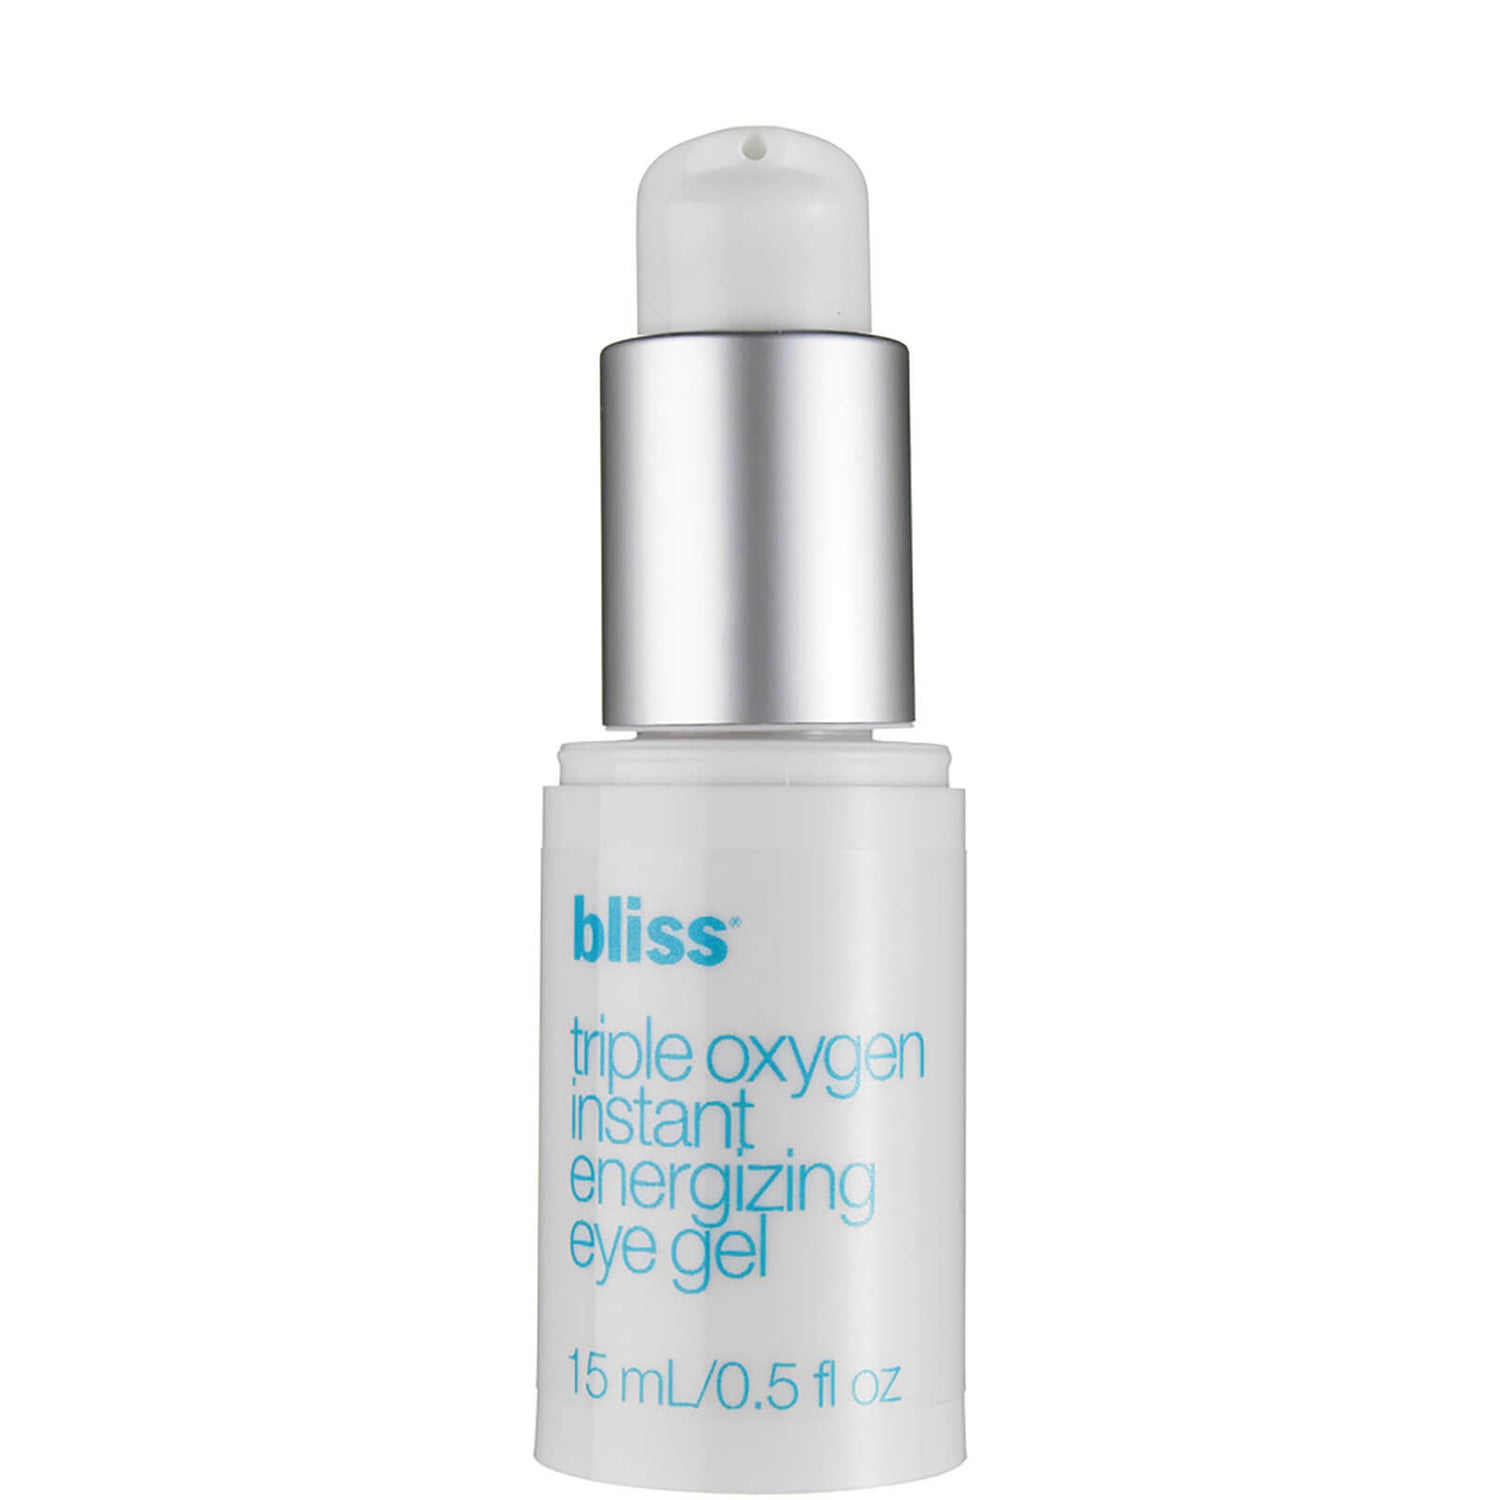 bliss Triple Oxygen Instant Energizing Eye Gel 15 ml